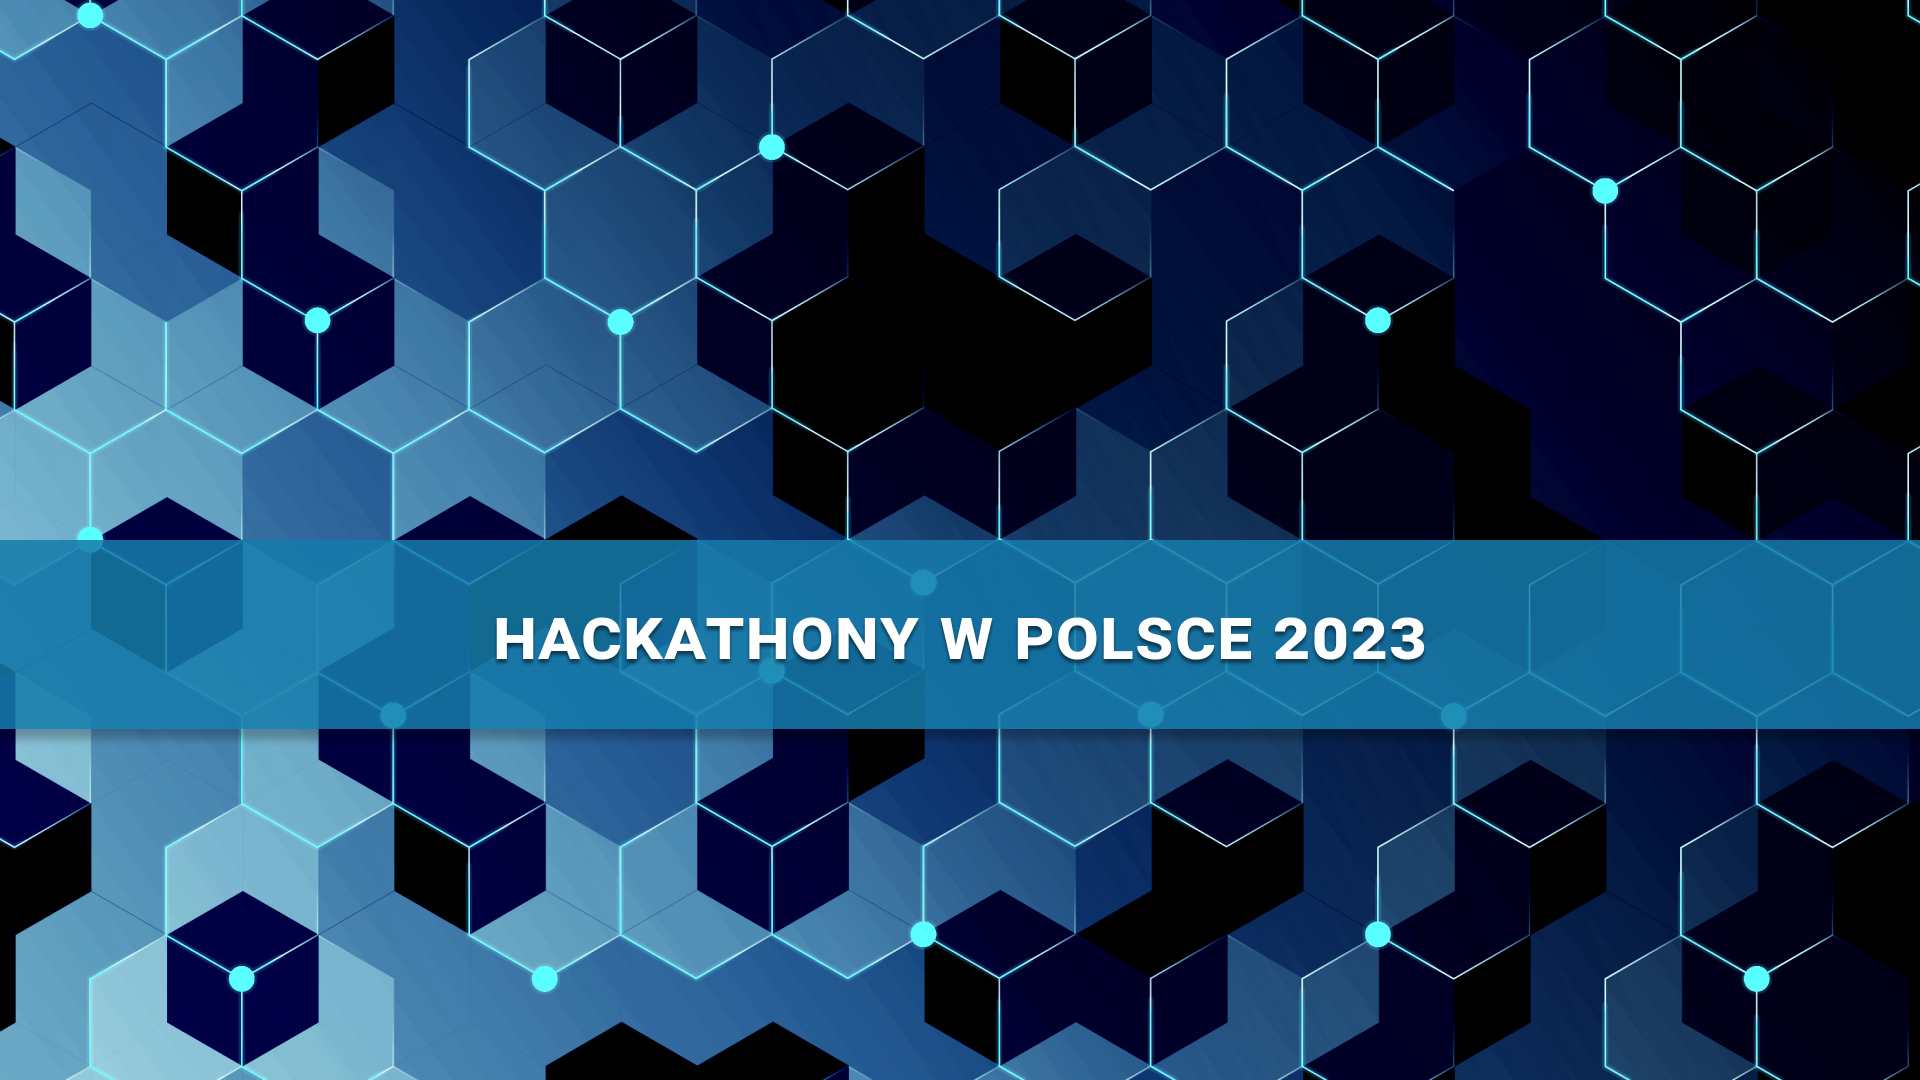 Hackathony w Polsce 2023 - gdzie znaleźć programistyczne wyzwania?